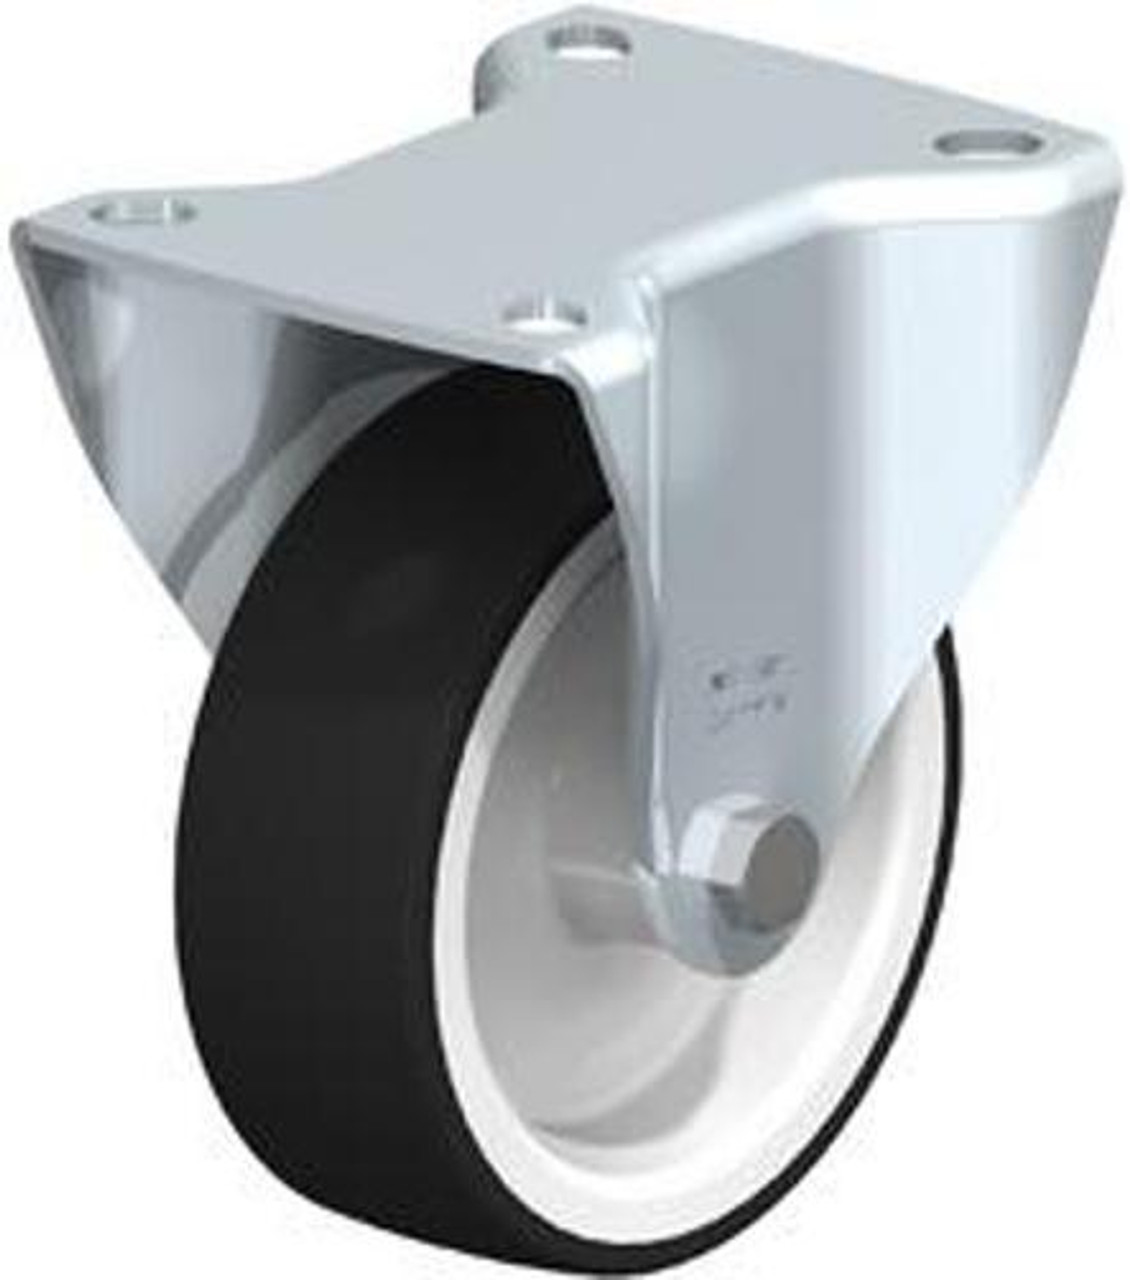 B-POTH 100G - Blickle Rigid Caster - Polyurethane Wheel